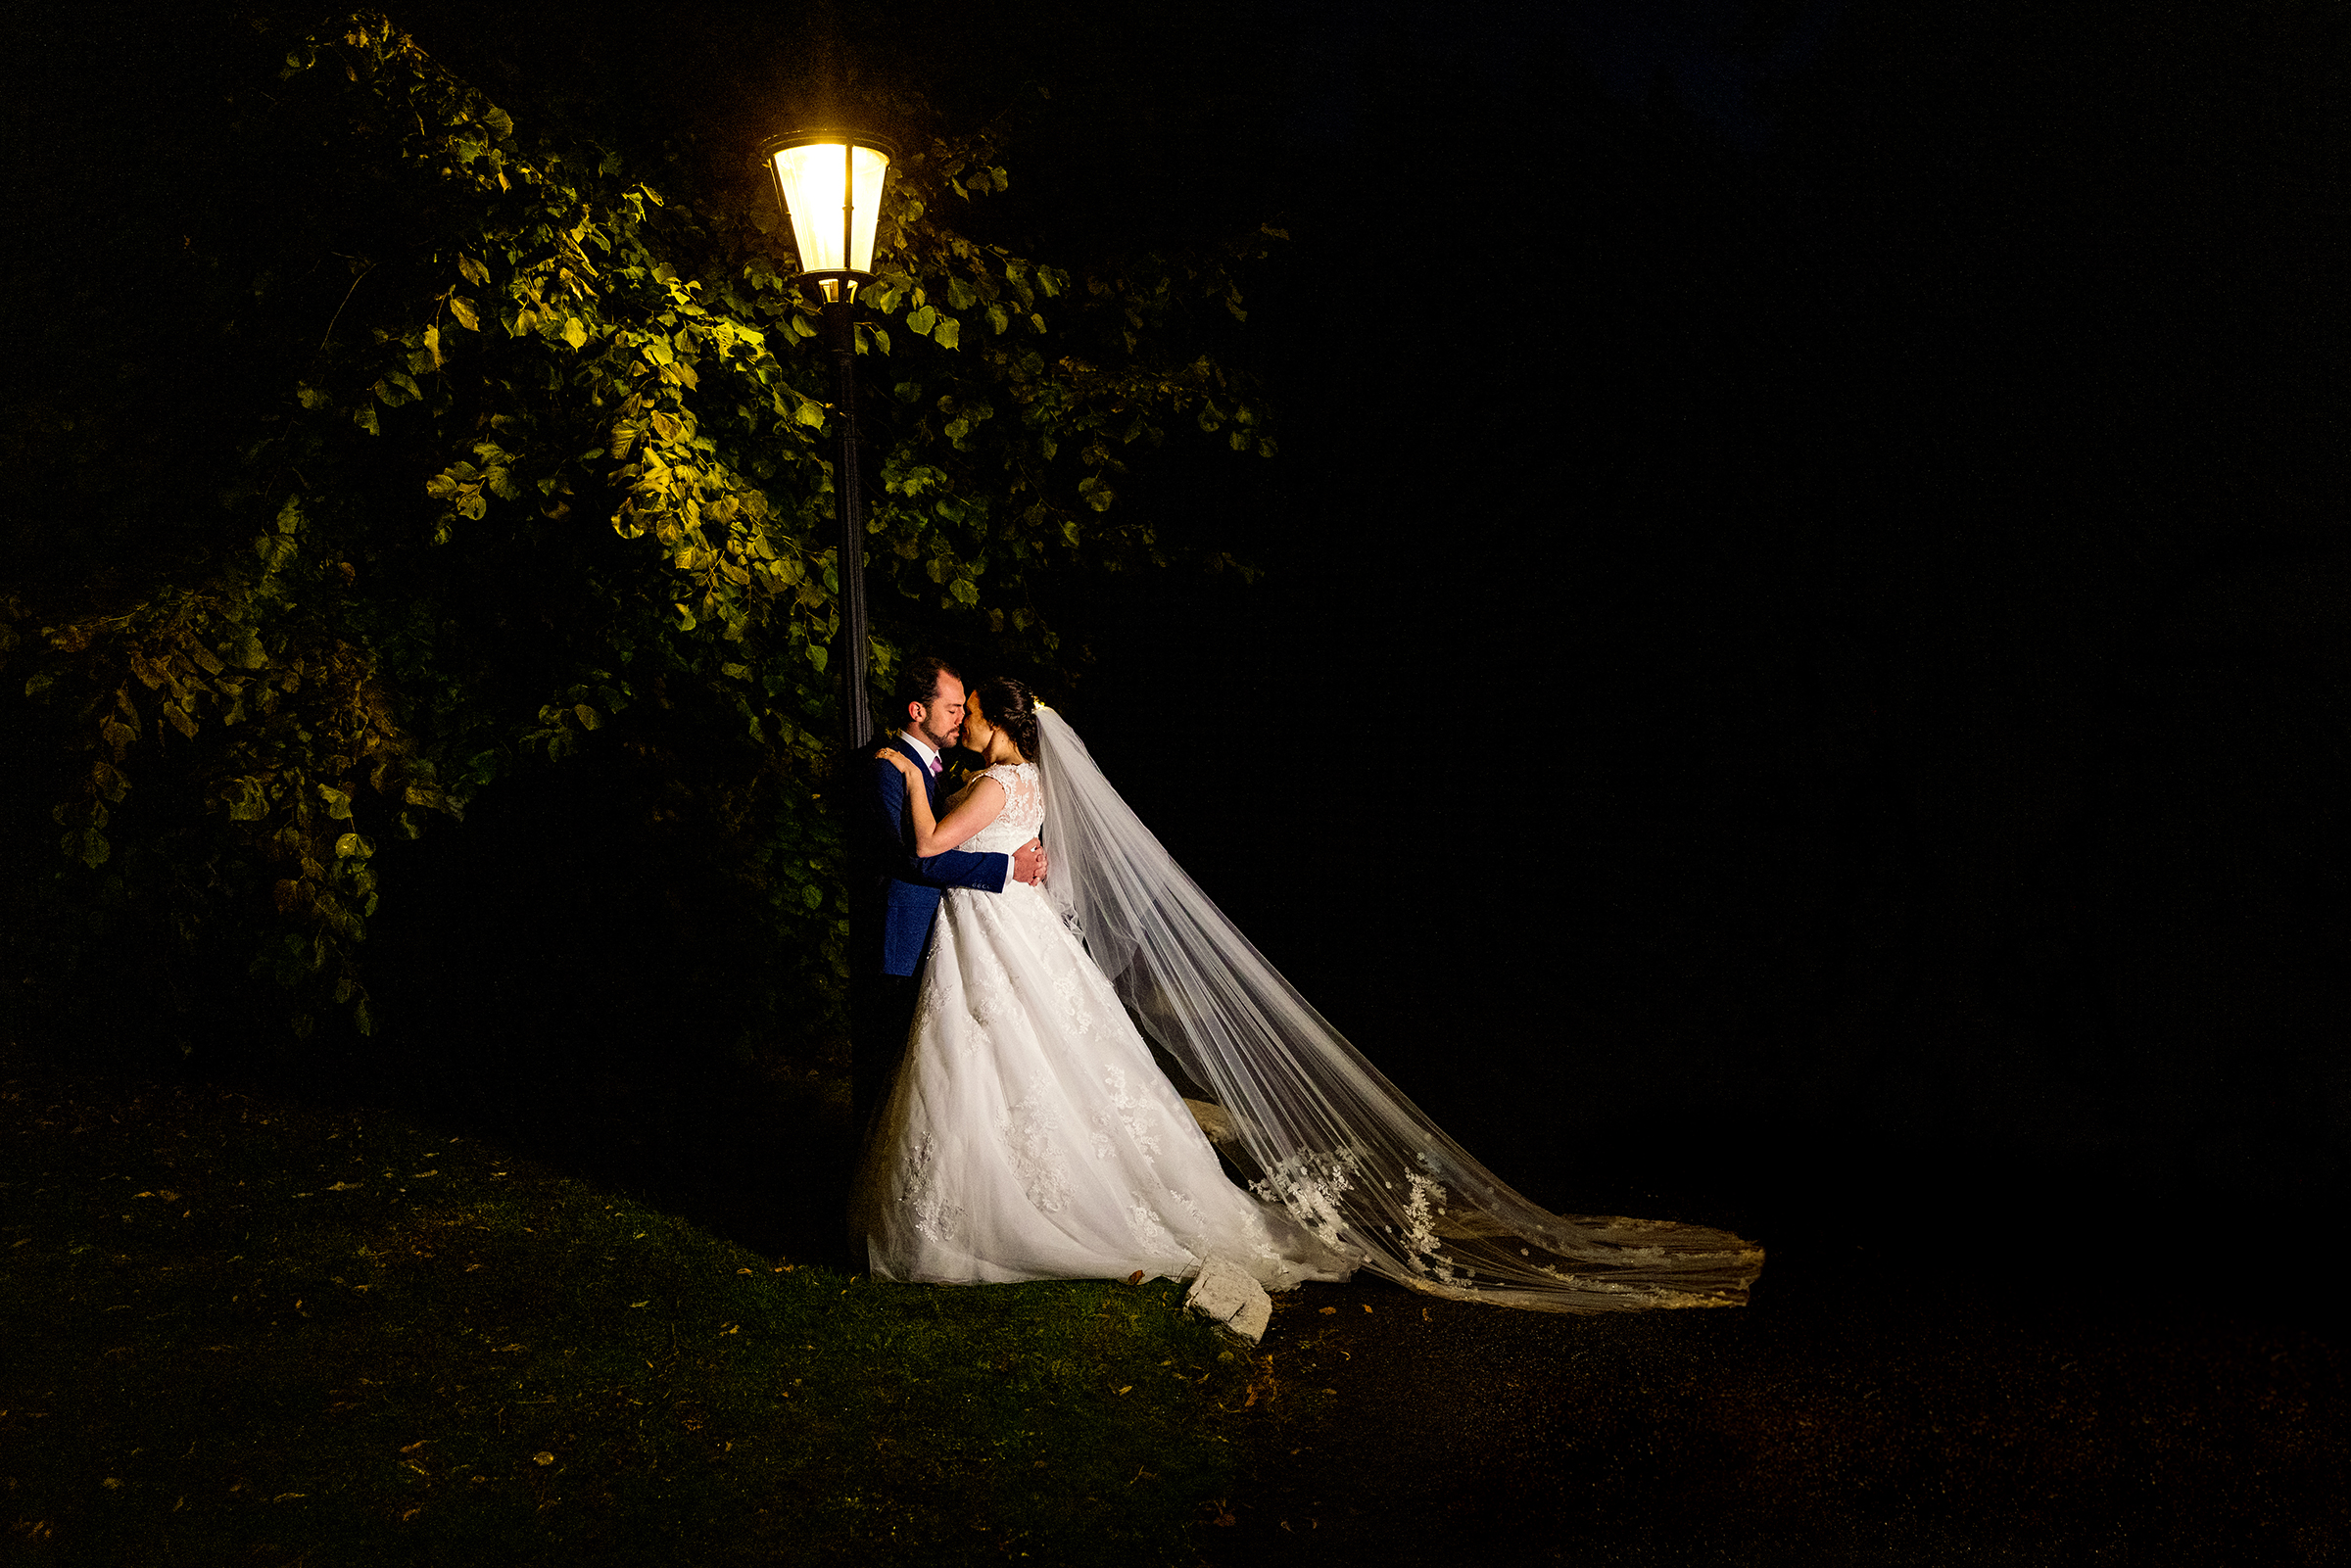 Peterstone Court Wedding - Bride and Groom under lamppost 